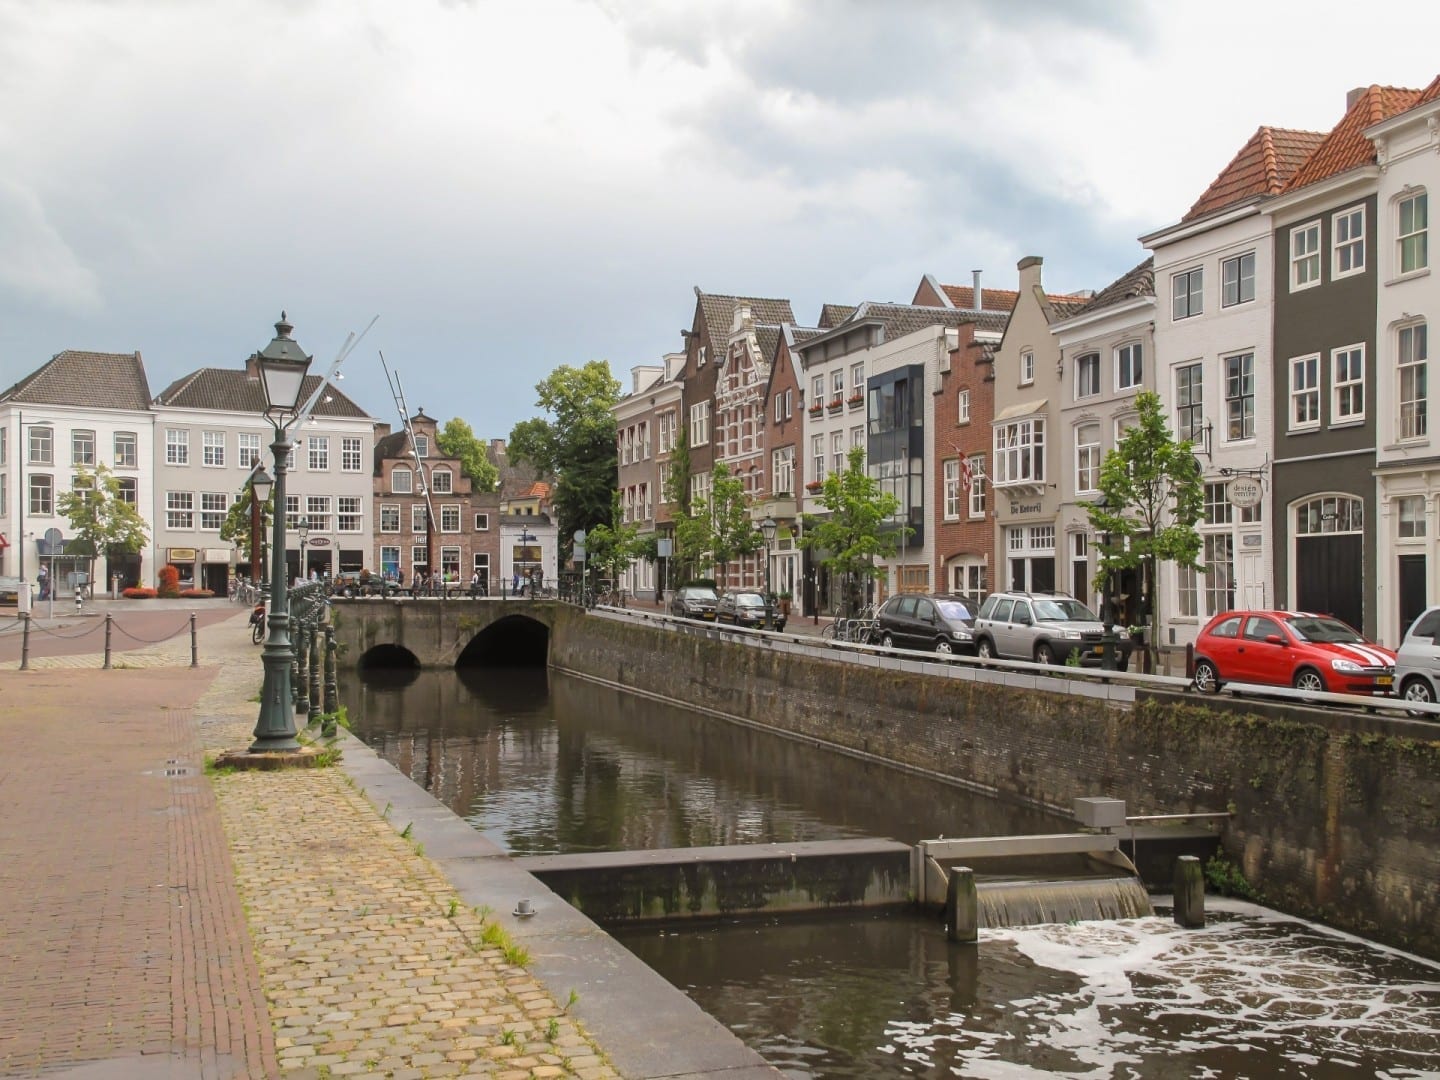 Vista de la calle en la ciudad Bolduque Países Bajos